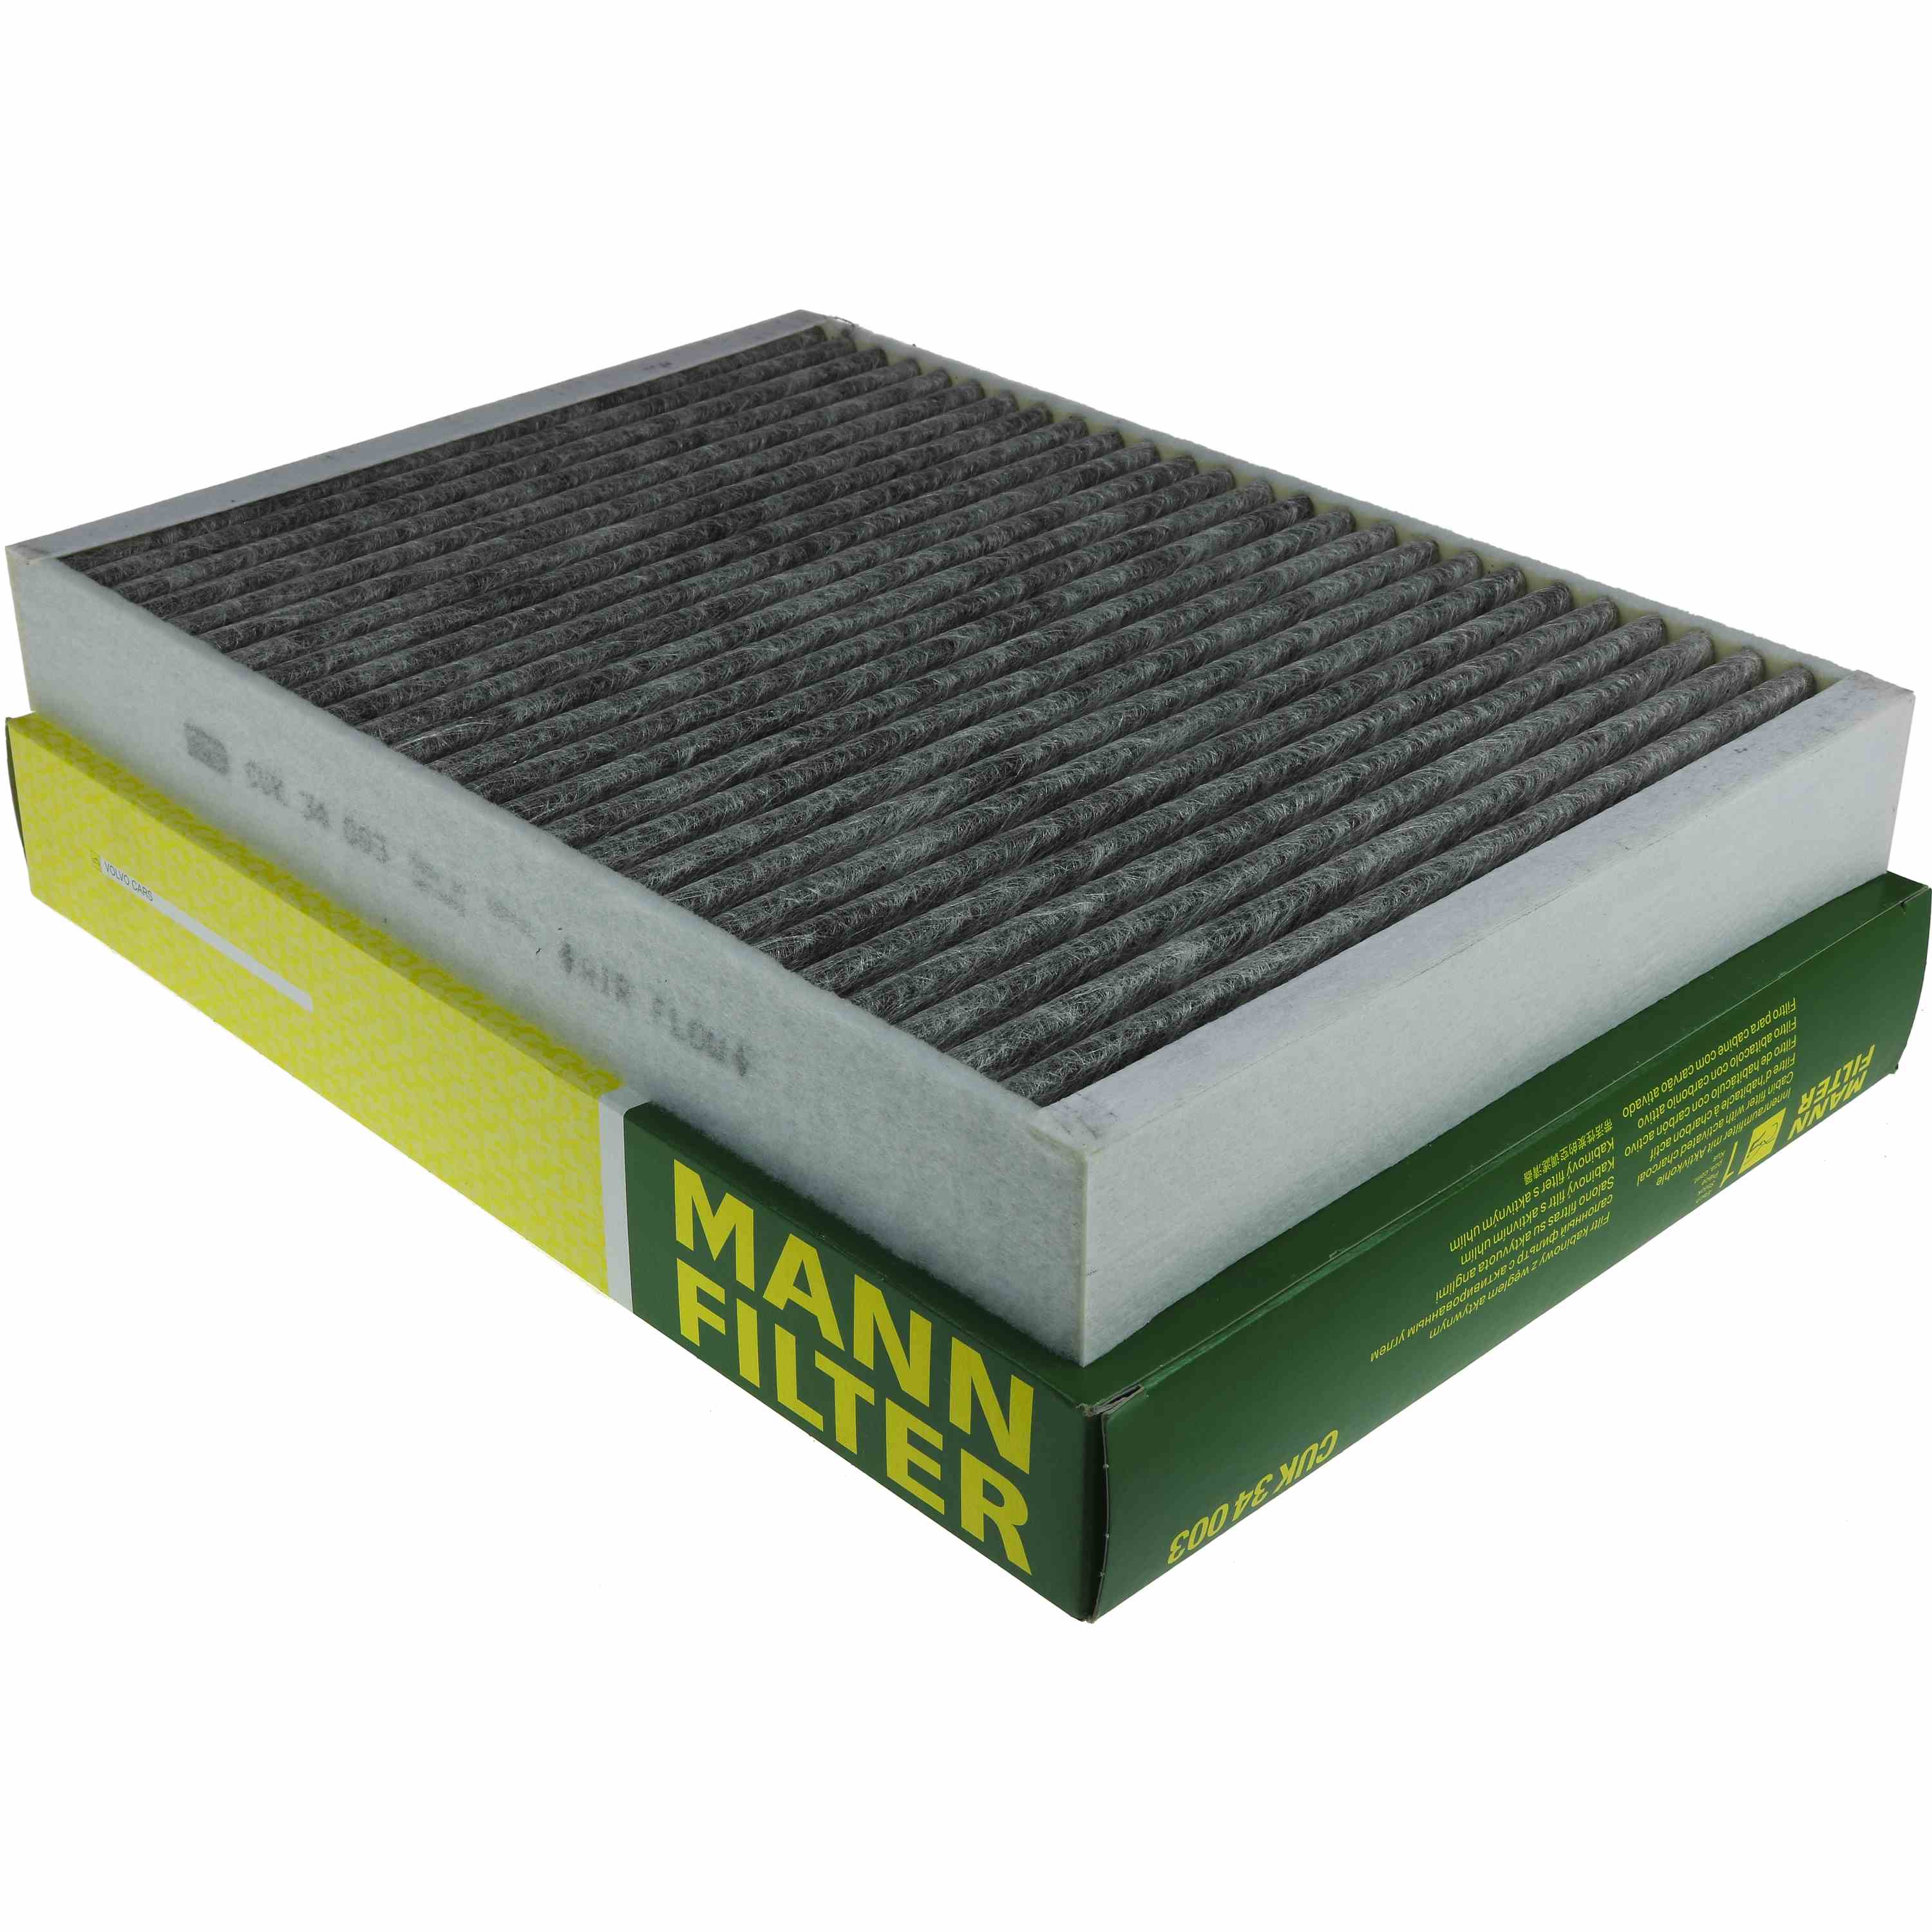 MANN-FILTER Innenraumfilter Pollenfilter Aktivkohle CUK 34 003